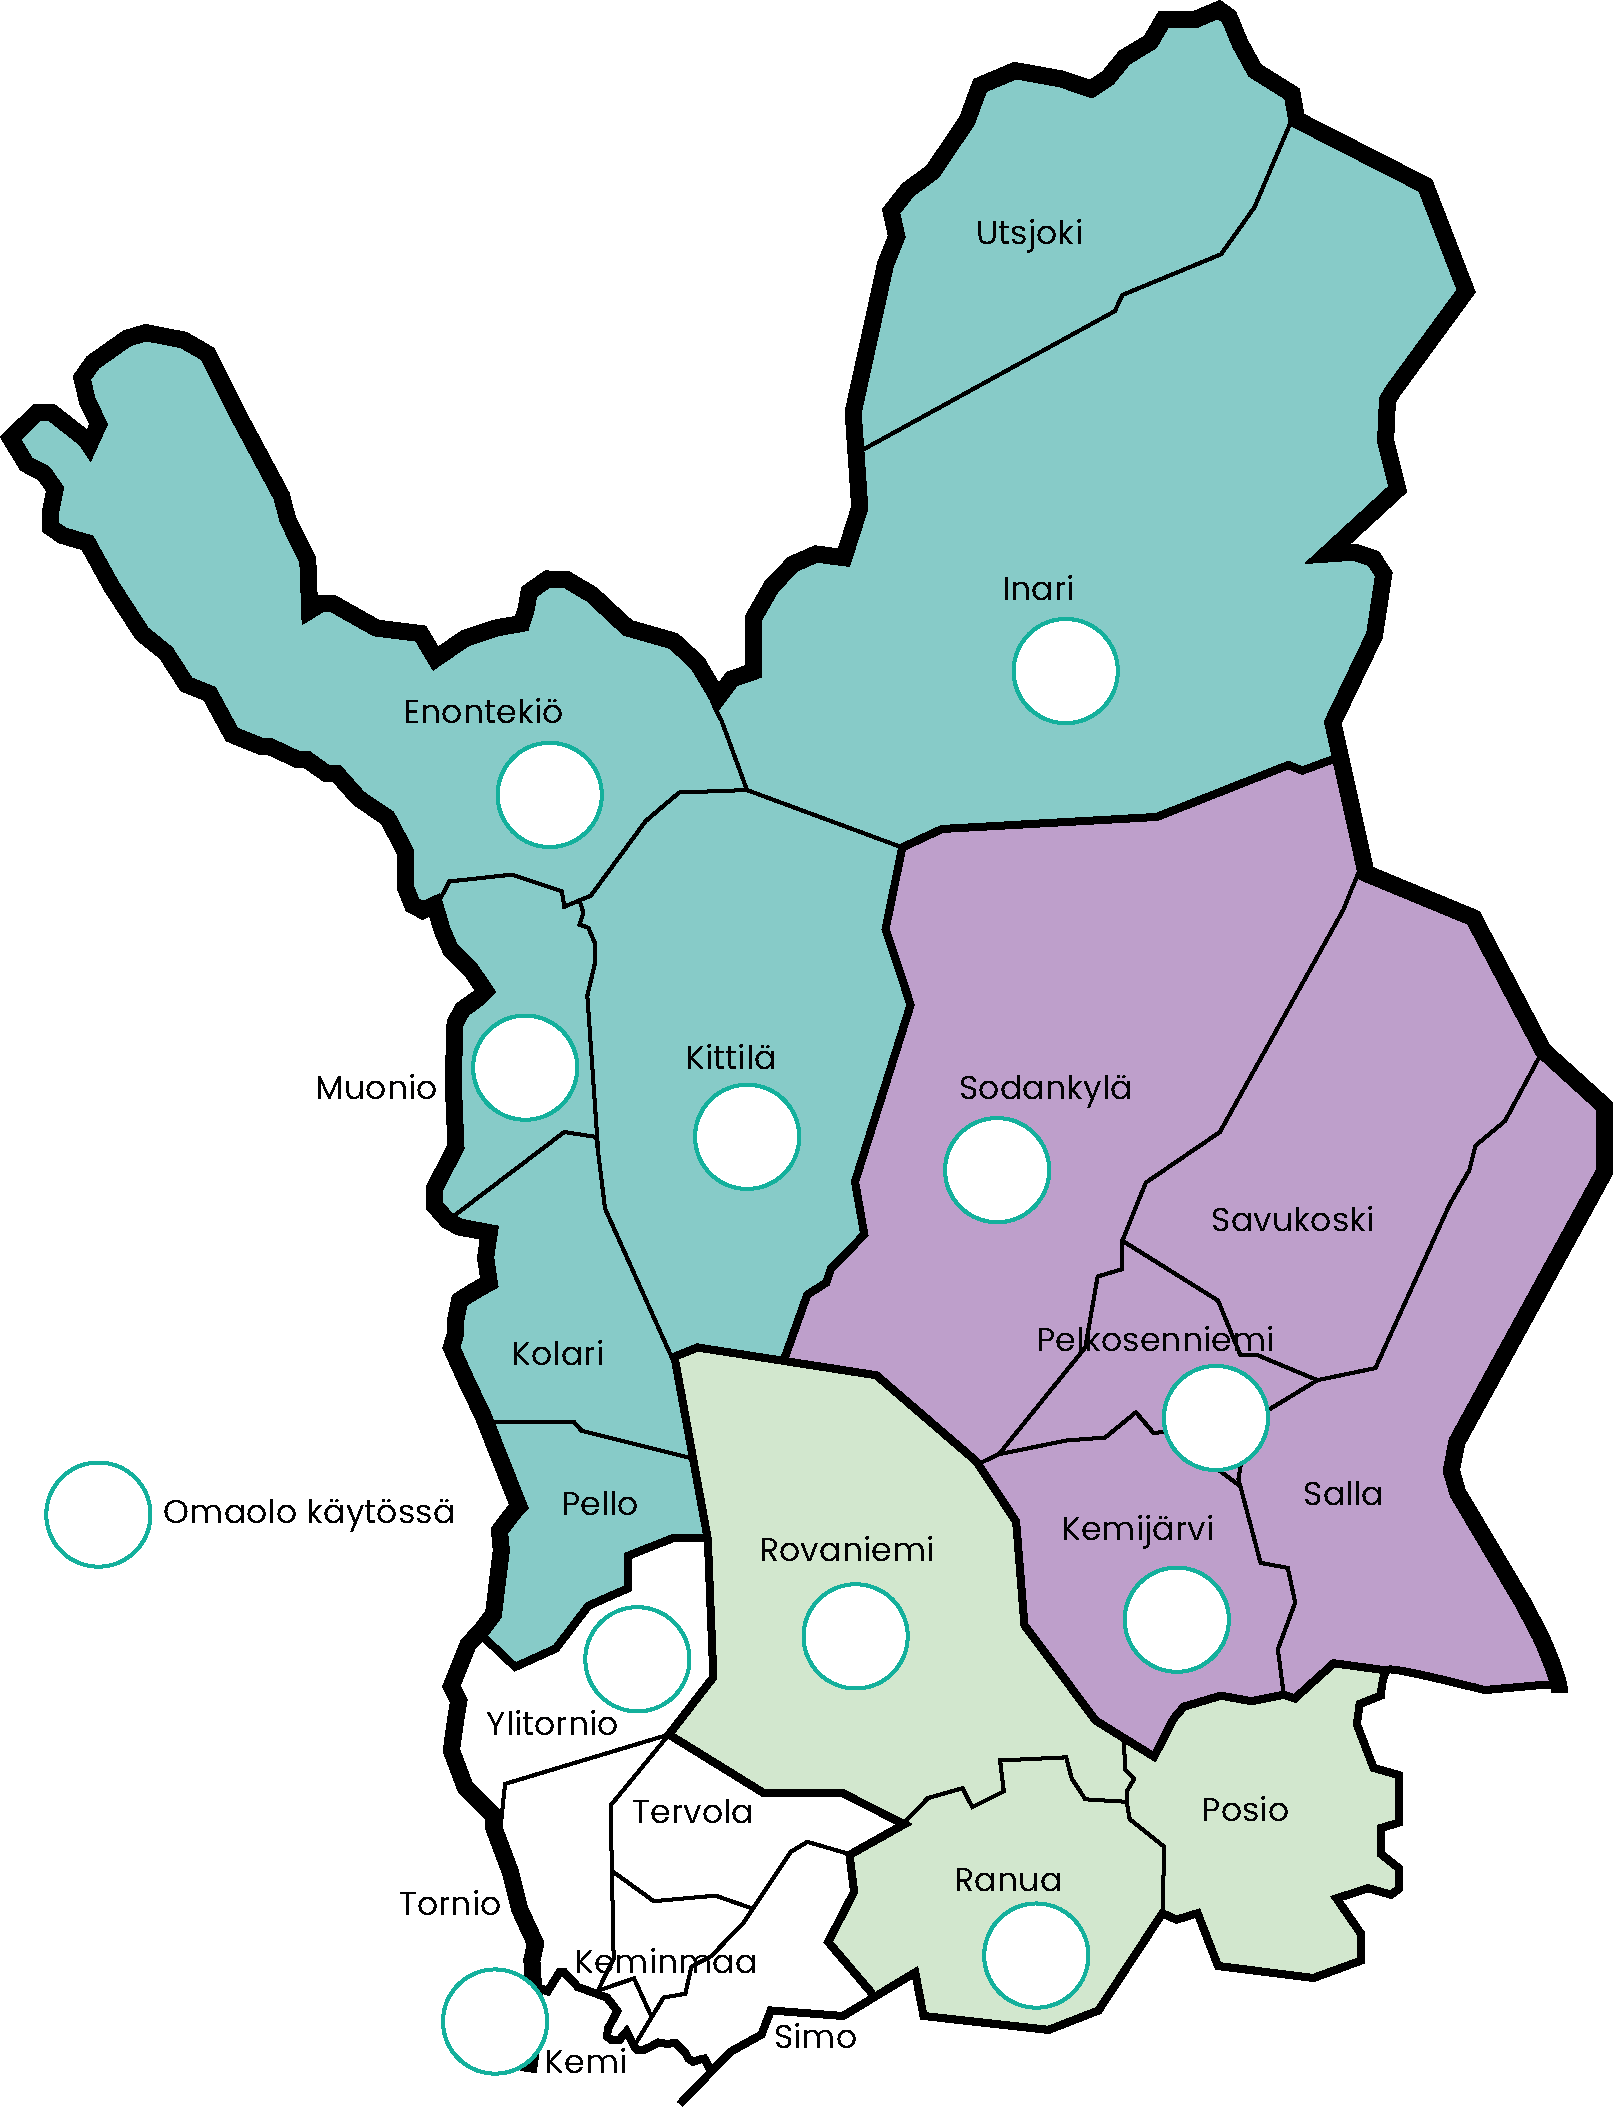 Karttakuvassa Lapin alueen Omaoloa käyttävät kunnat merkattu palvelualueittain. Omaoloa käyttävät: Inari, Muonio-Enontekiö, Kittilä, Sodankylä, Pelkosenniemi, Ylitornio, Rovaniemi, Kemijärvi, Kemi ja Ranua.